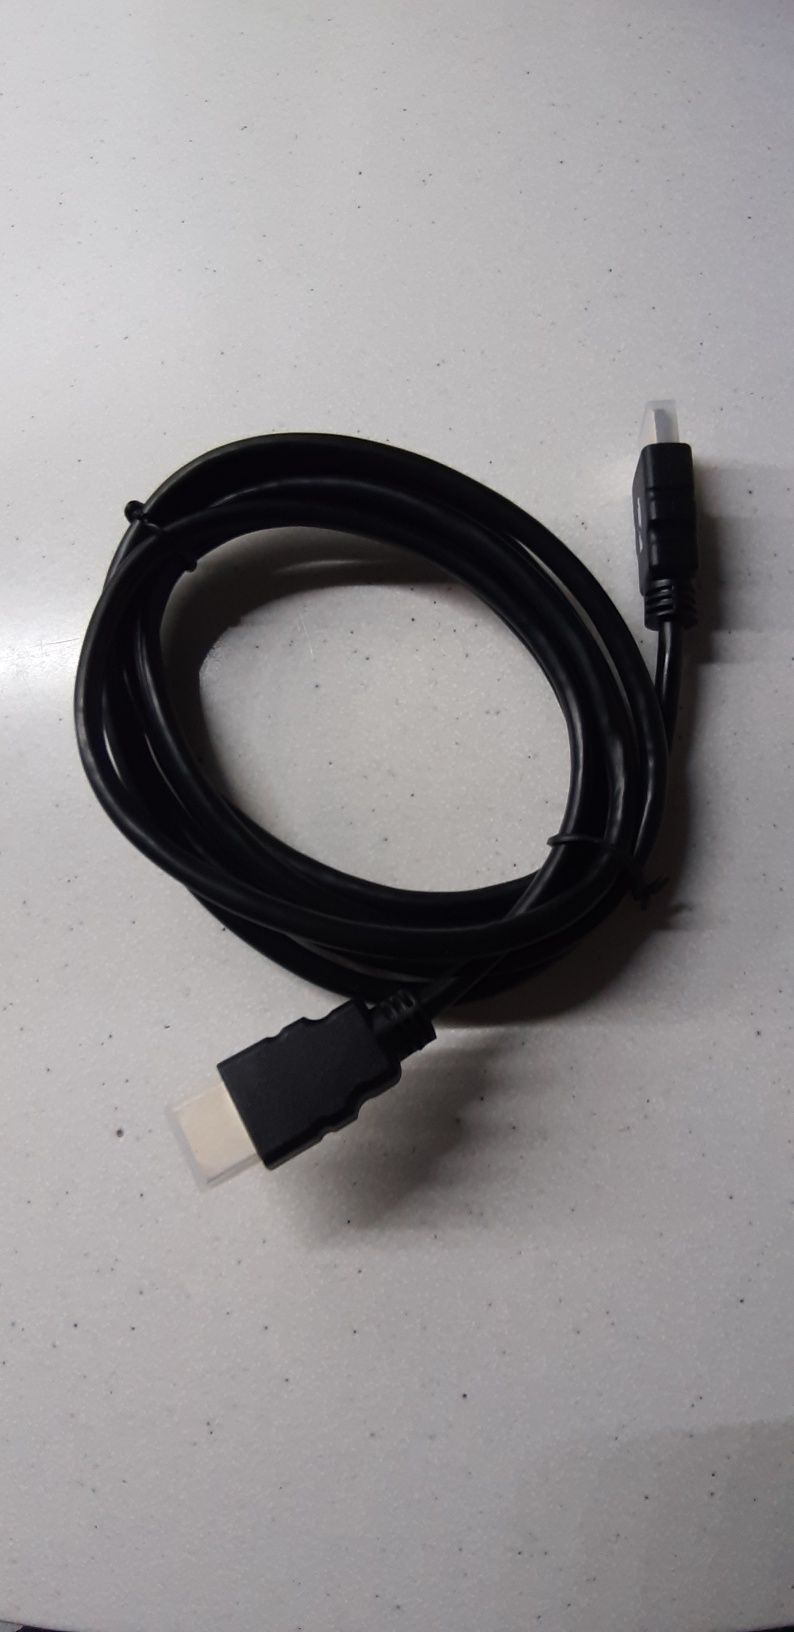 Kabel przewód połączeniowy HDMI o długości 1,8 m.